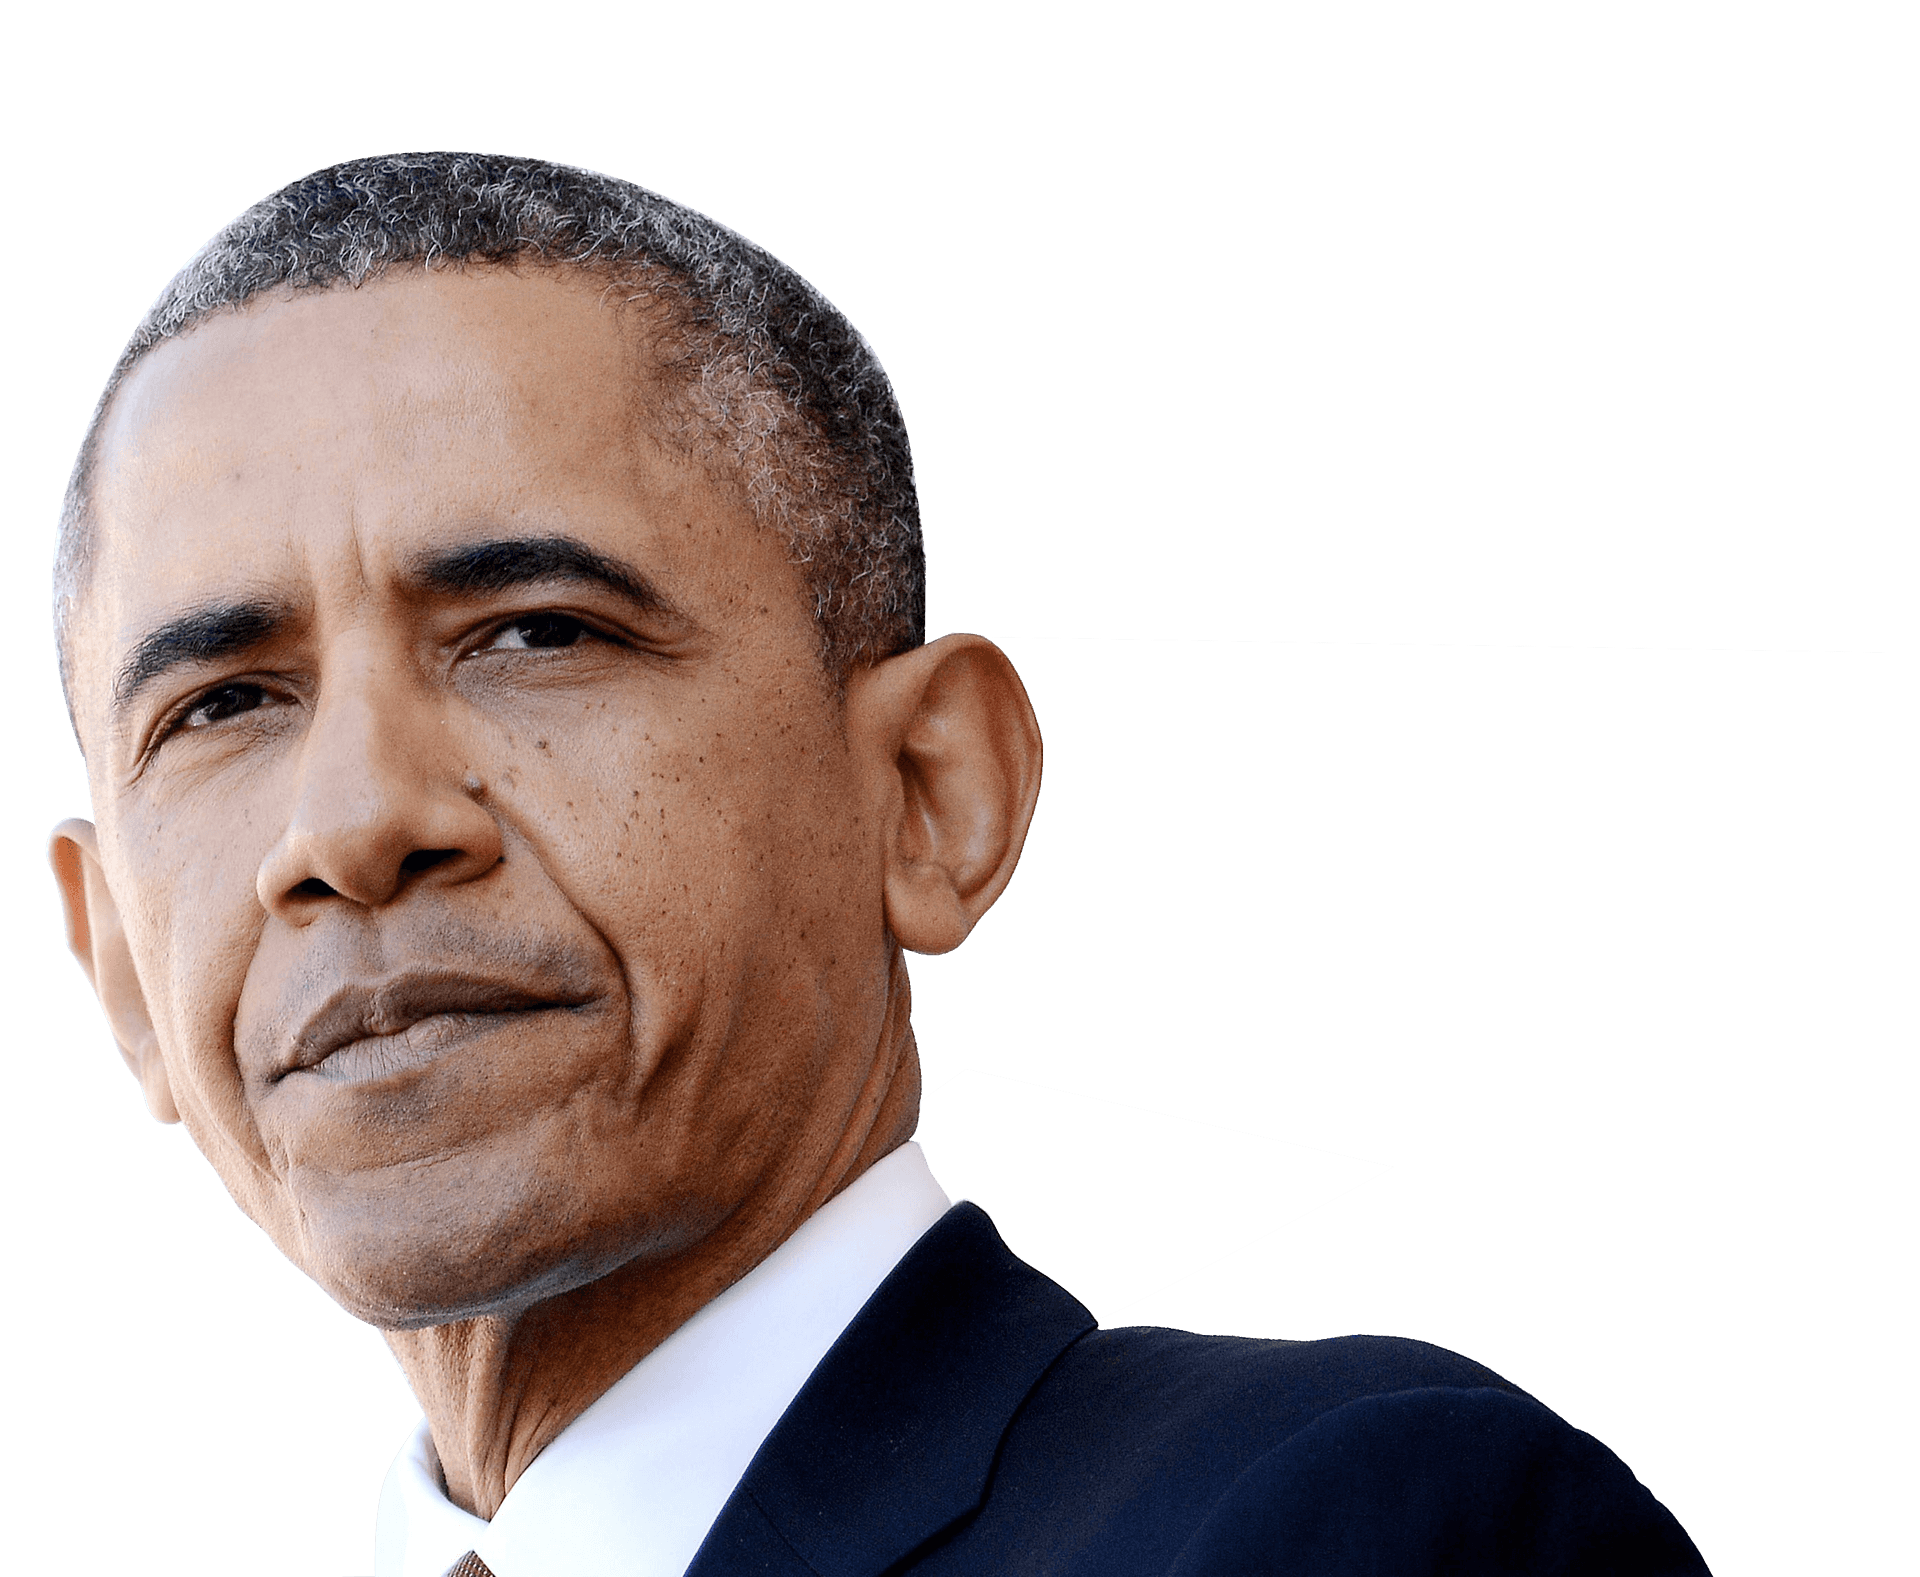 Barack Obama Portrait PNG